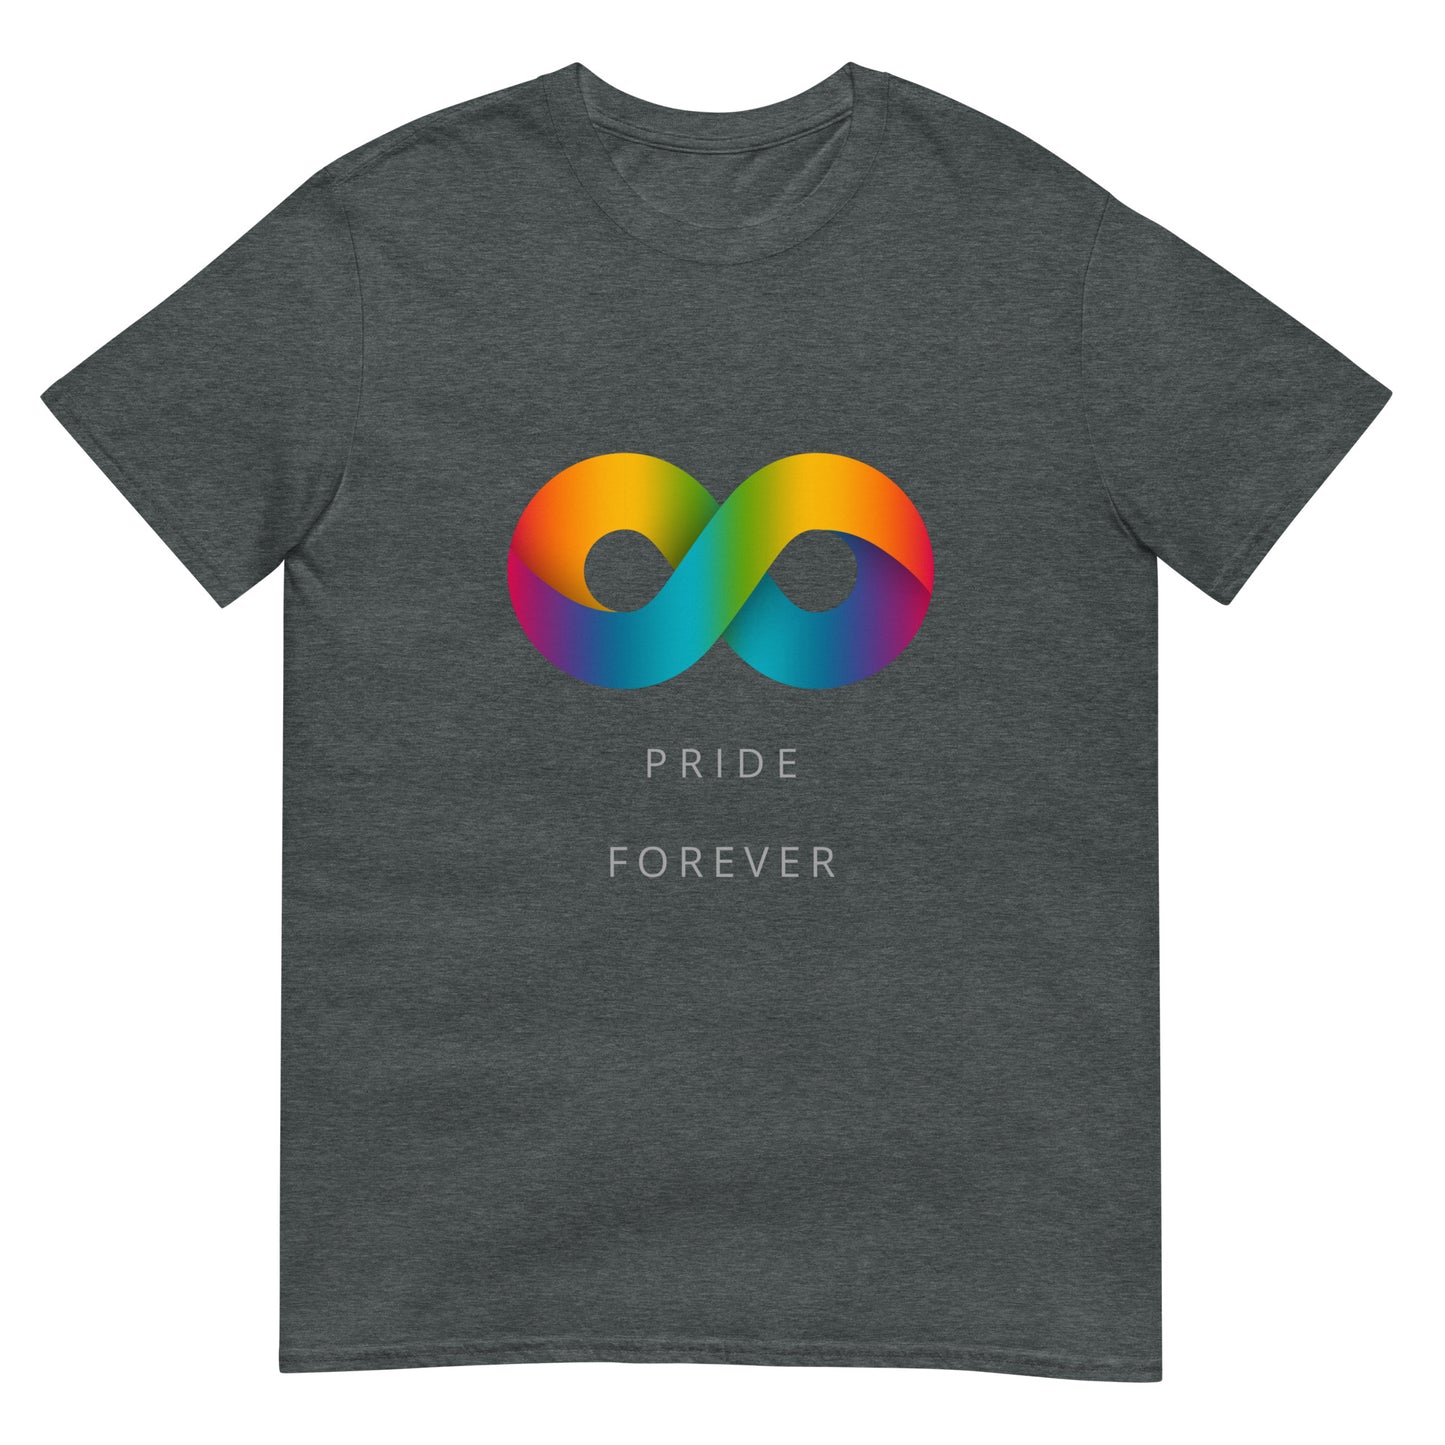 Short-Sleeve Pride Forever T-Shirt